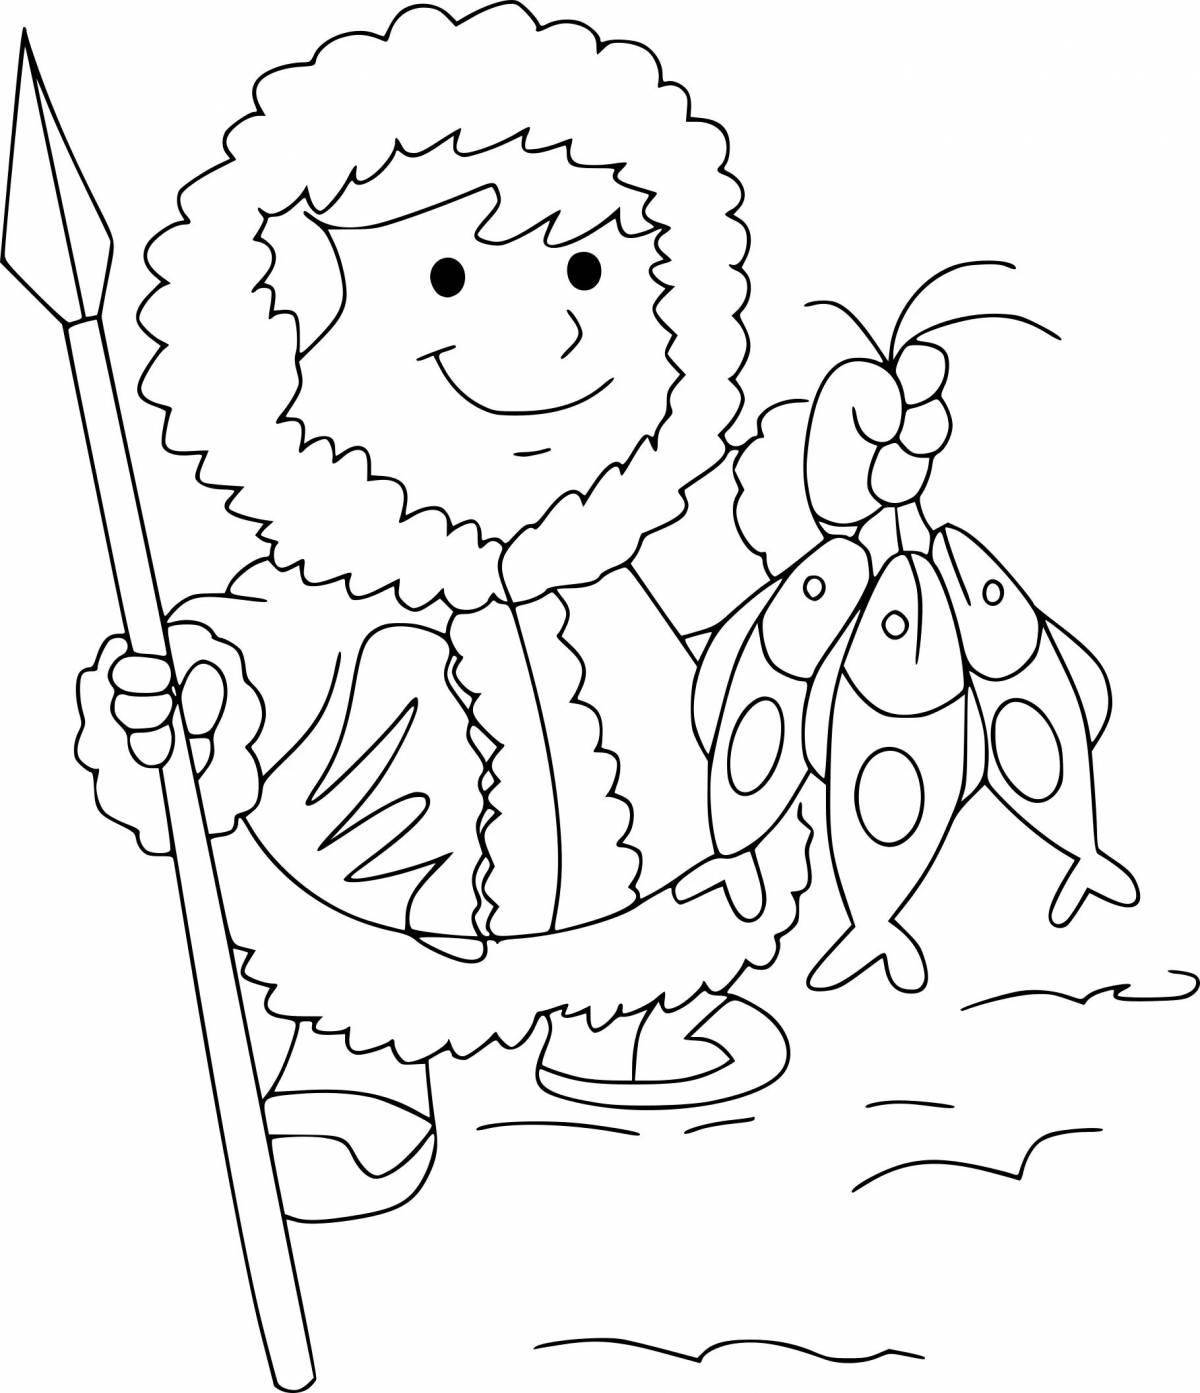 Fun coloring book for eskimo kids